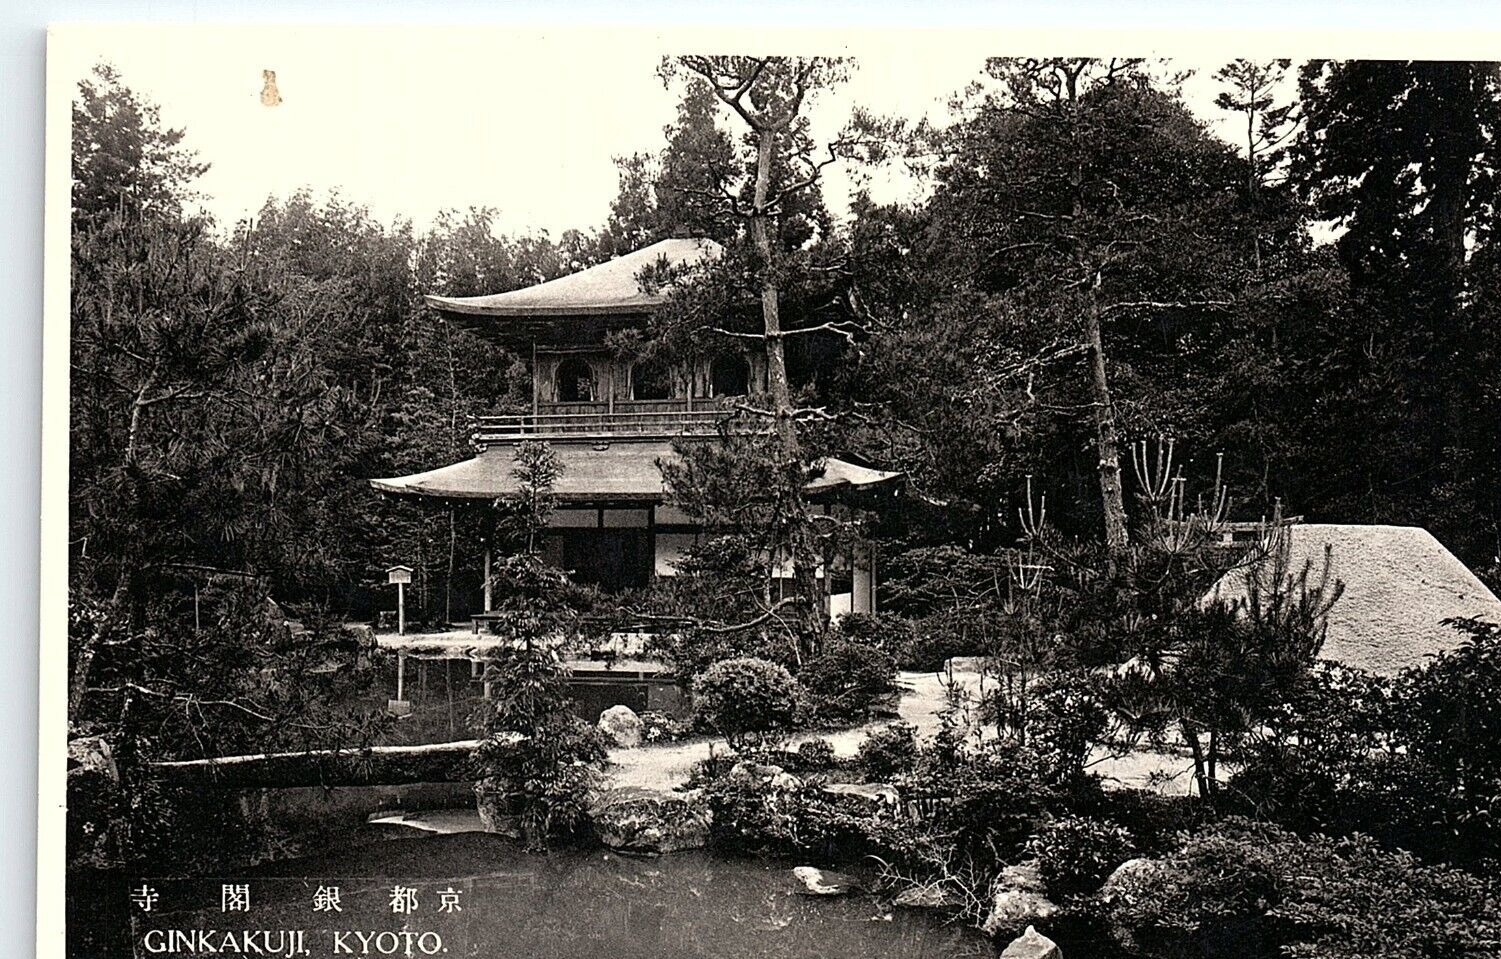 1920s KYOTO JAPAN GINKAKUJI SILVER PAVILION ZEN TEMPLE PHOTO RPPC POSTCARD P1424